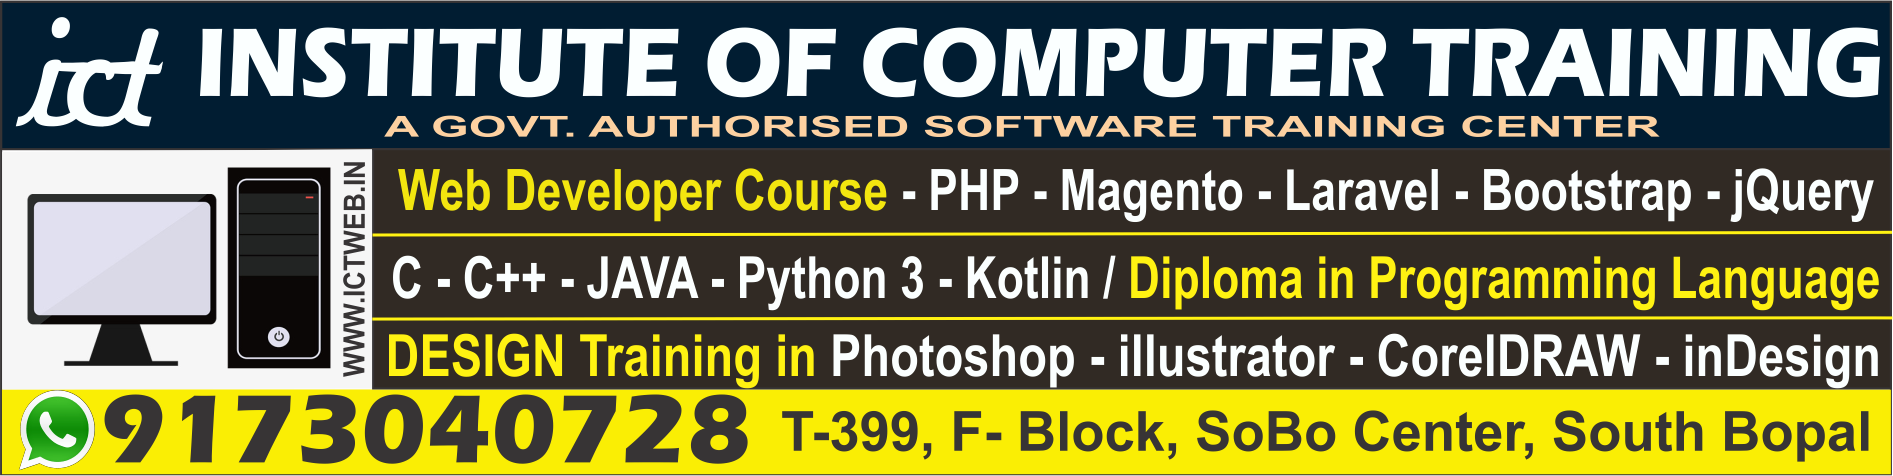 Institute of Computer Training|Coaching Institute|Education